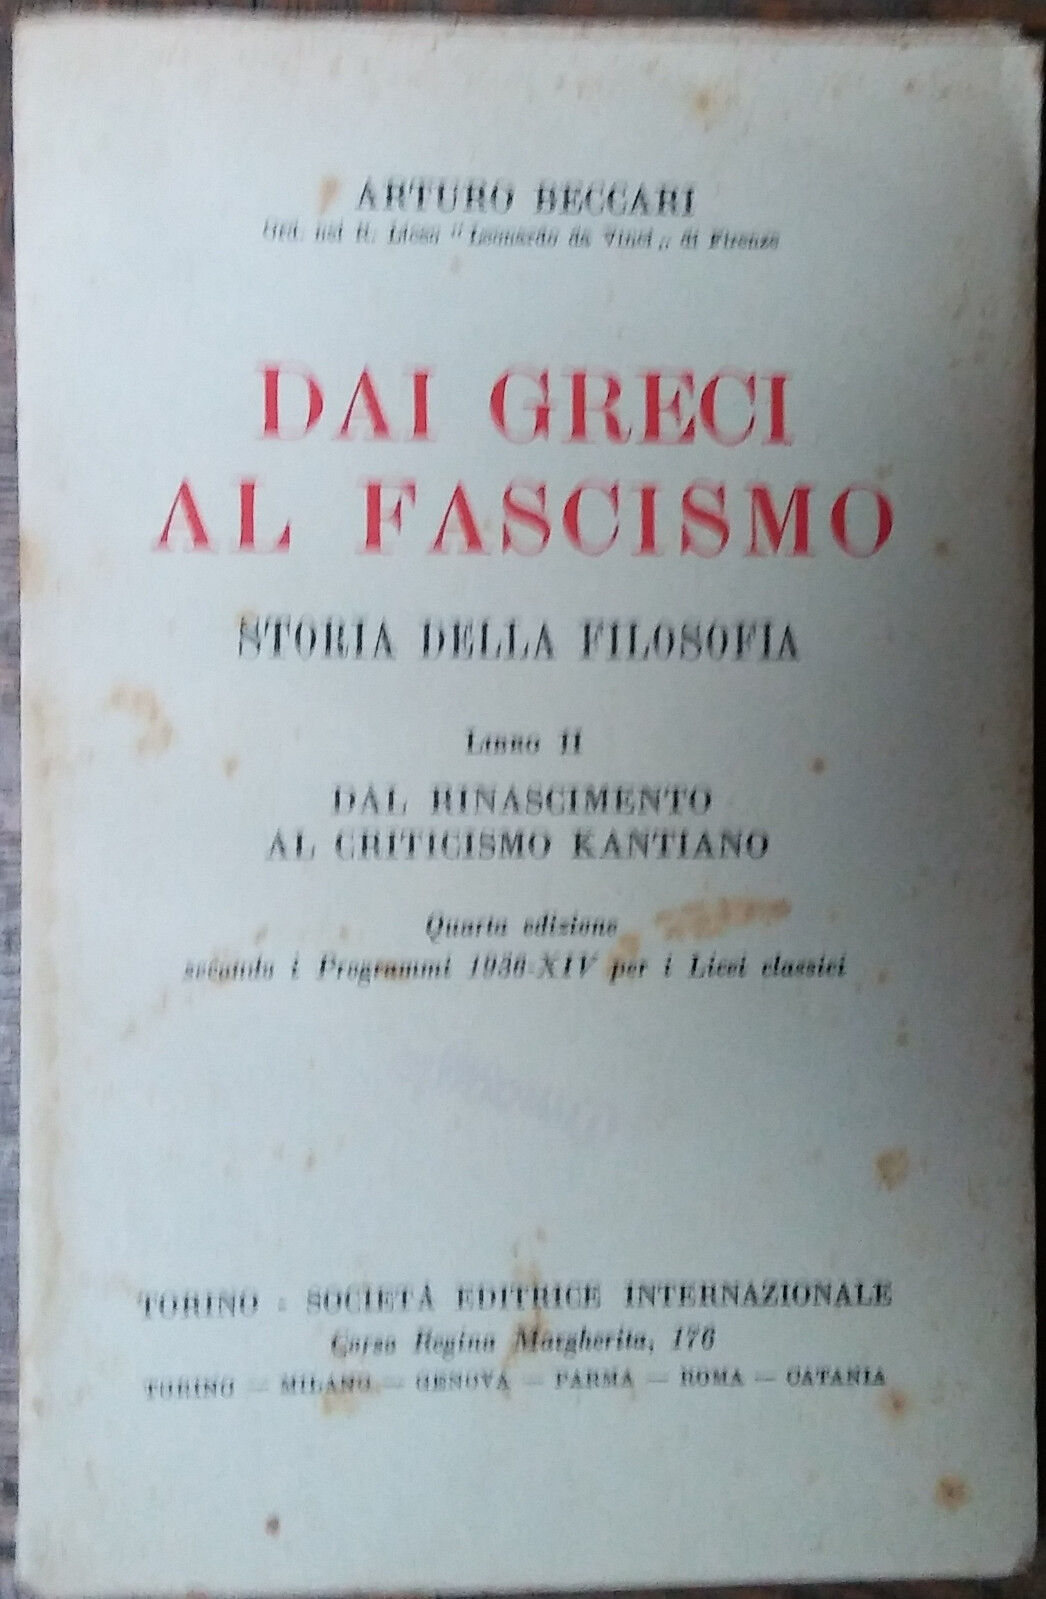 Dai greci al fascismo (libro II) - Arturo Beccari - SEI,1936 - R